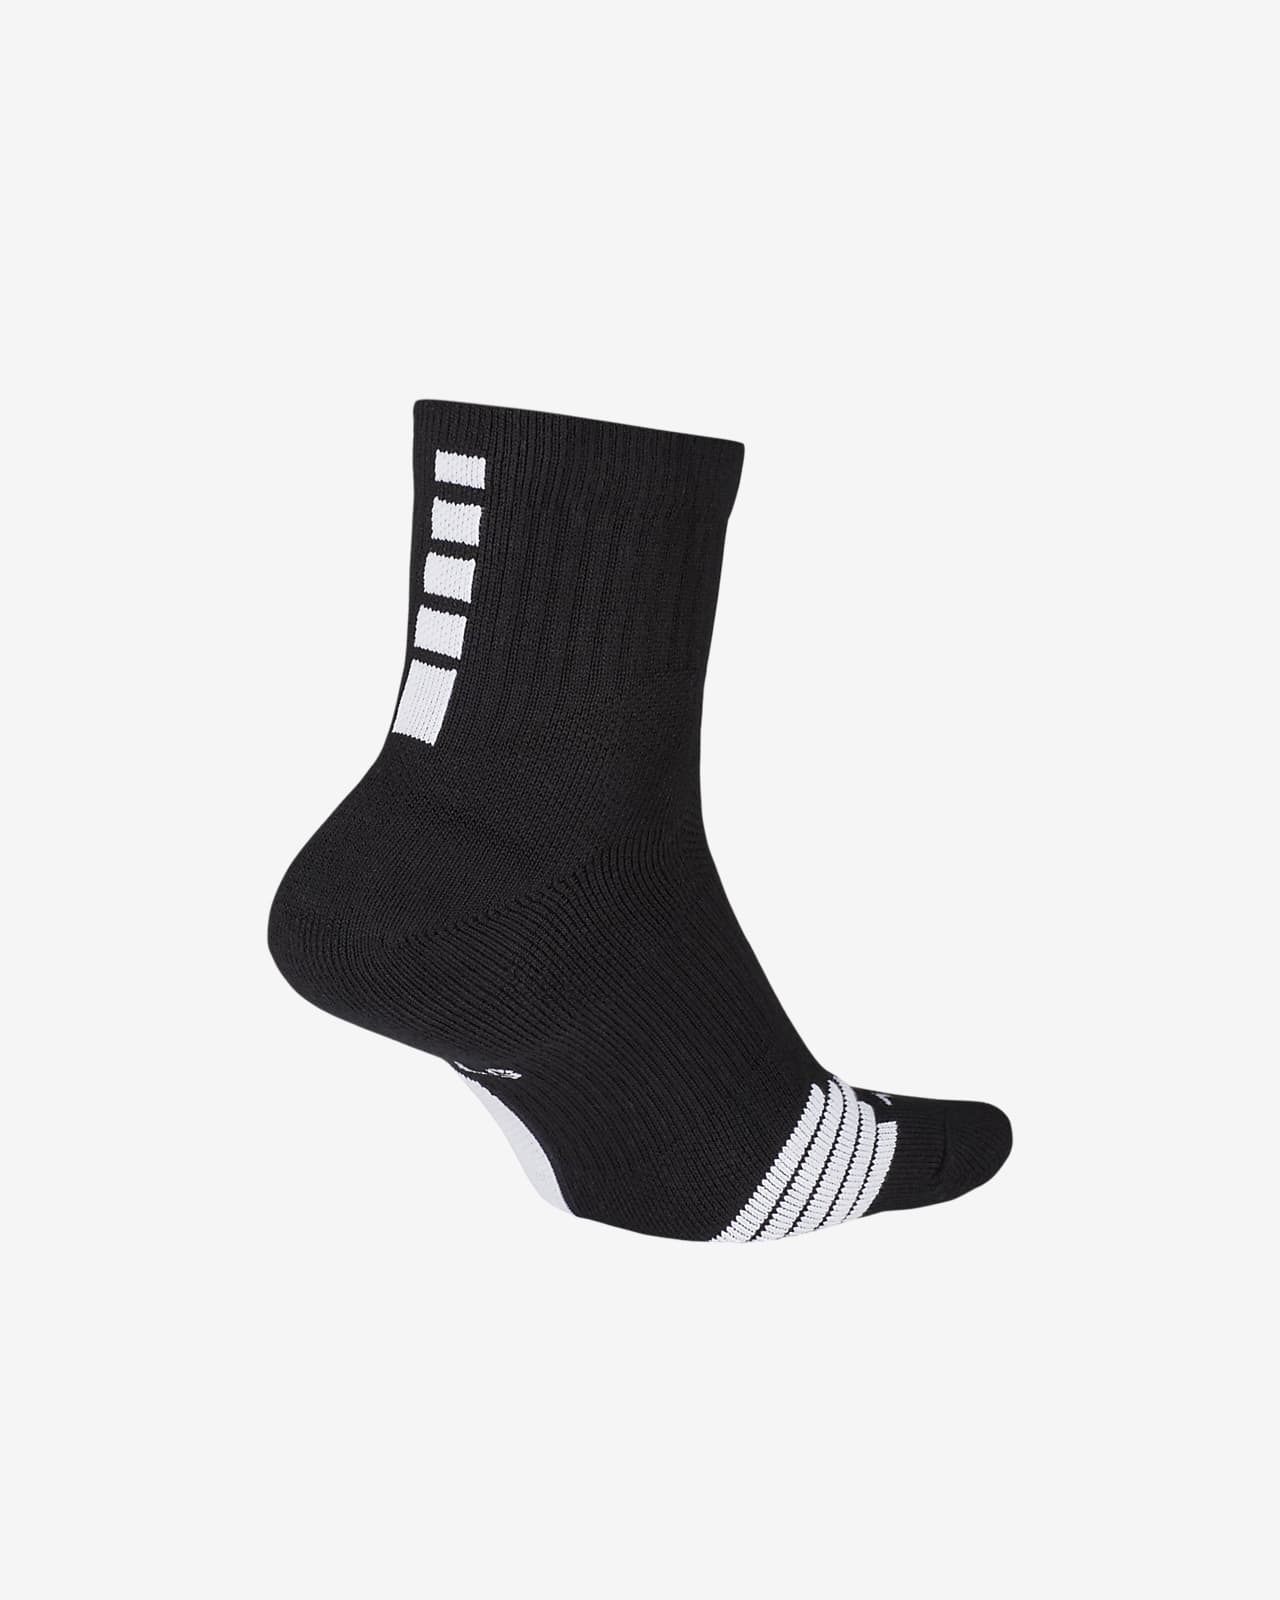 nike elite mid basketball socks